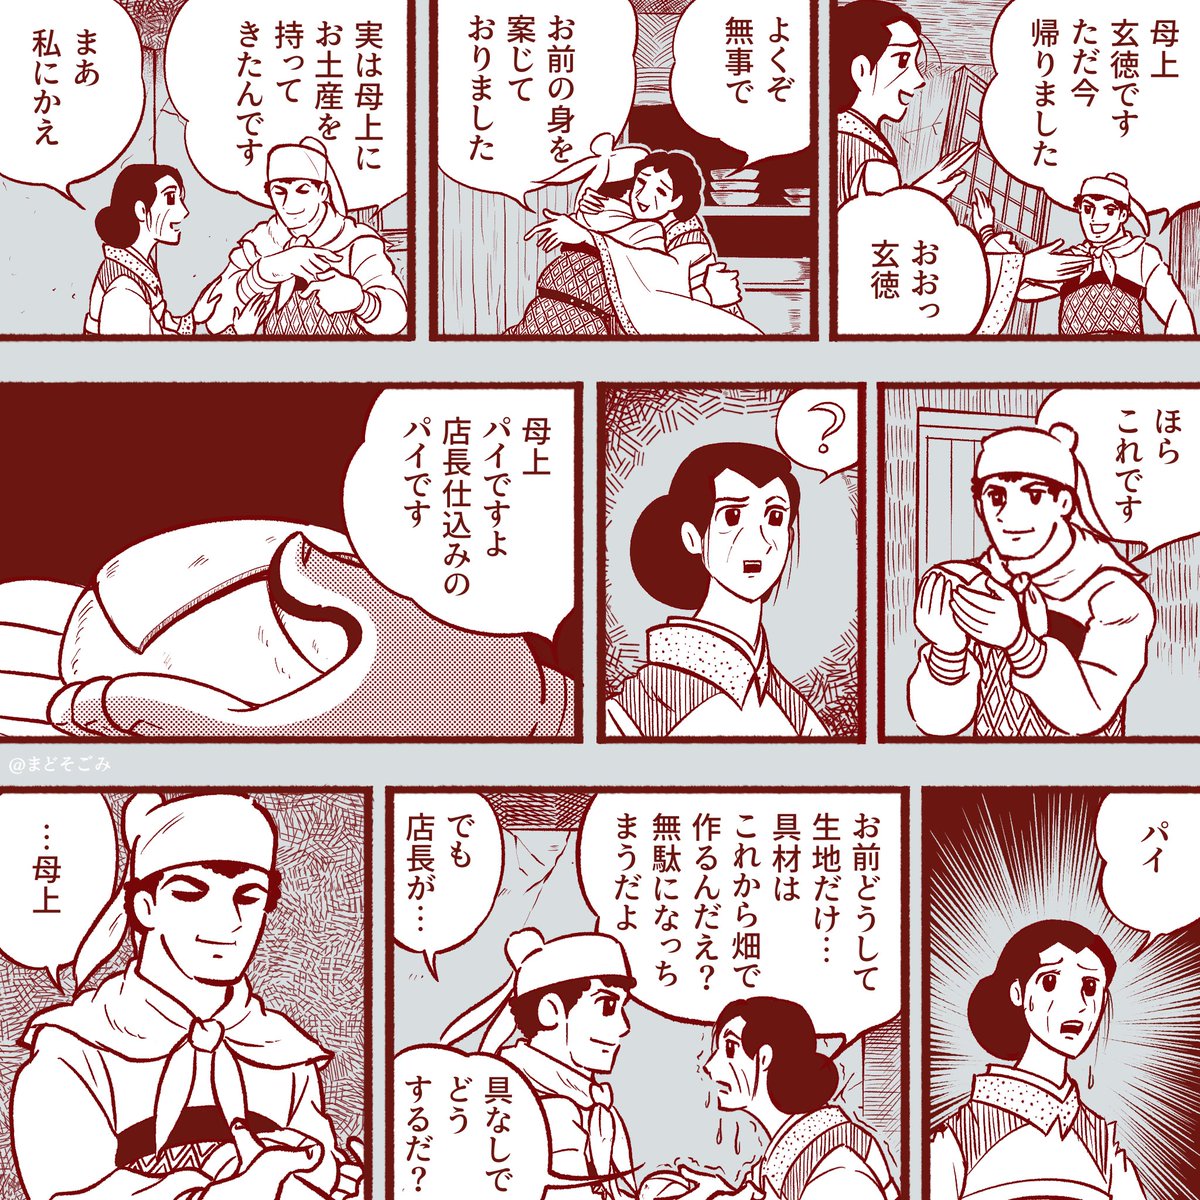 そんなわけで 本日関東から神戸にやってまいりまして ひっそりと三国志祭に参加して 原稿中の漫画